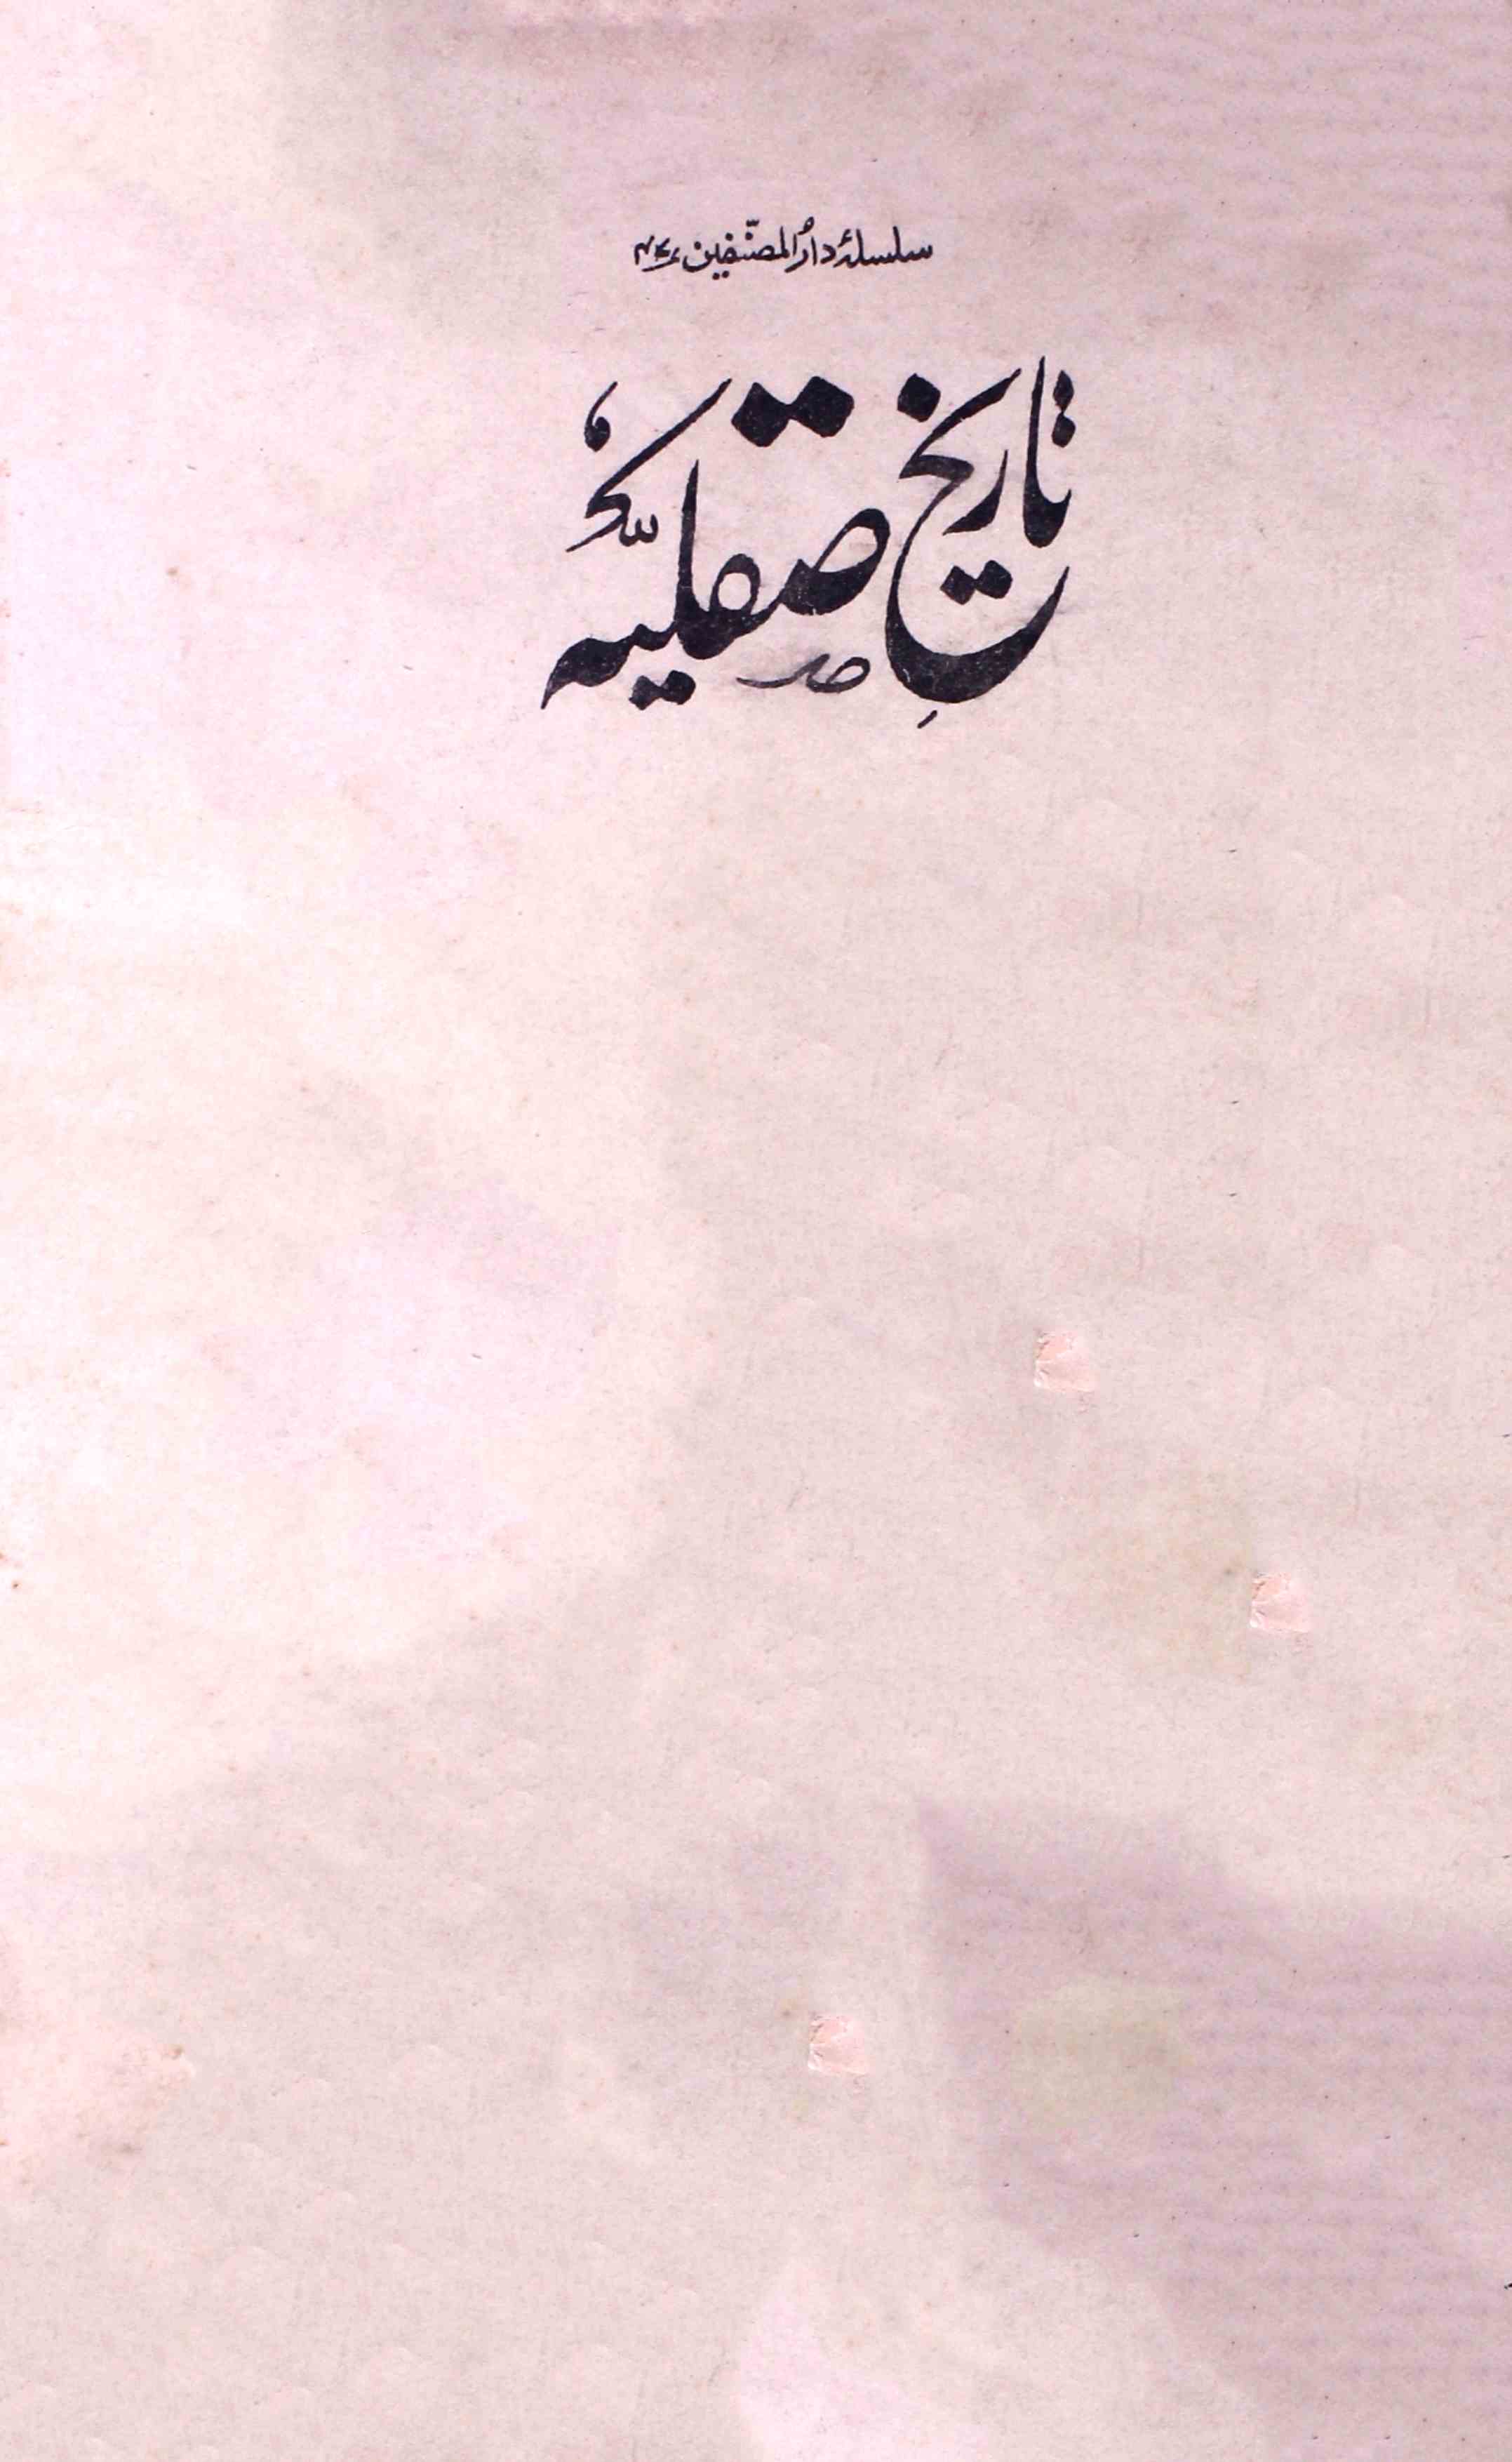 Tareekh-e-Saqliyya